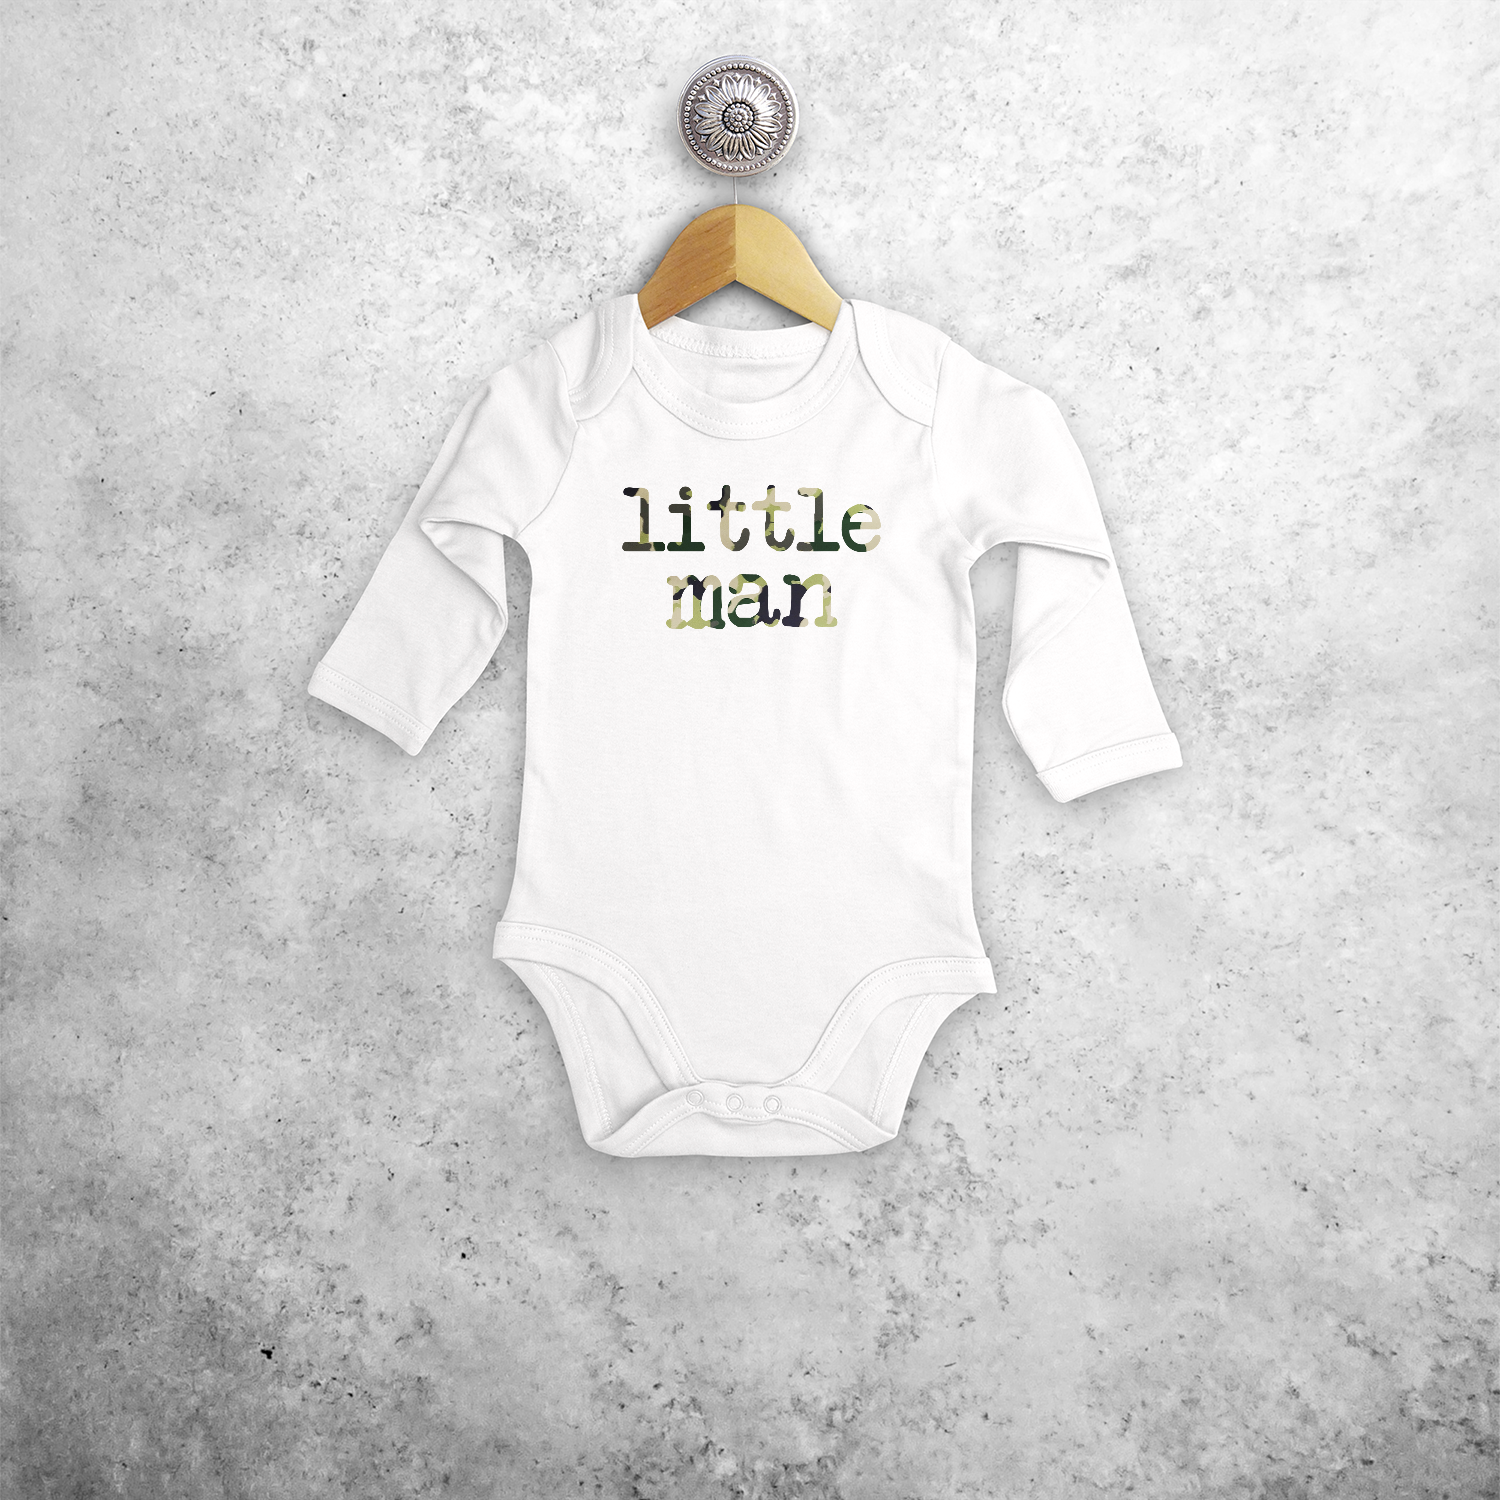 'Little man' baby kruippakje met lange mouwen